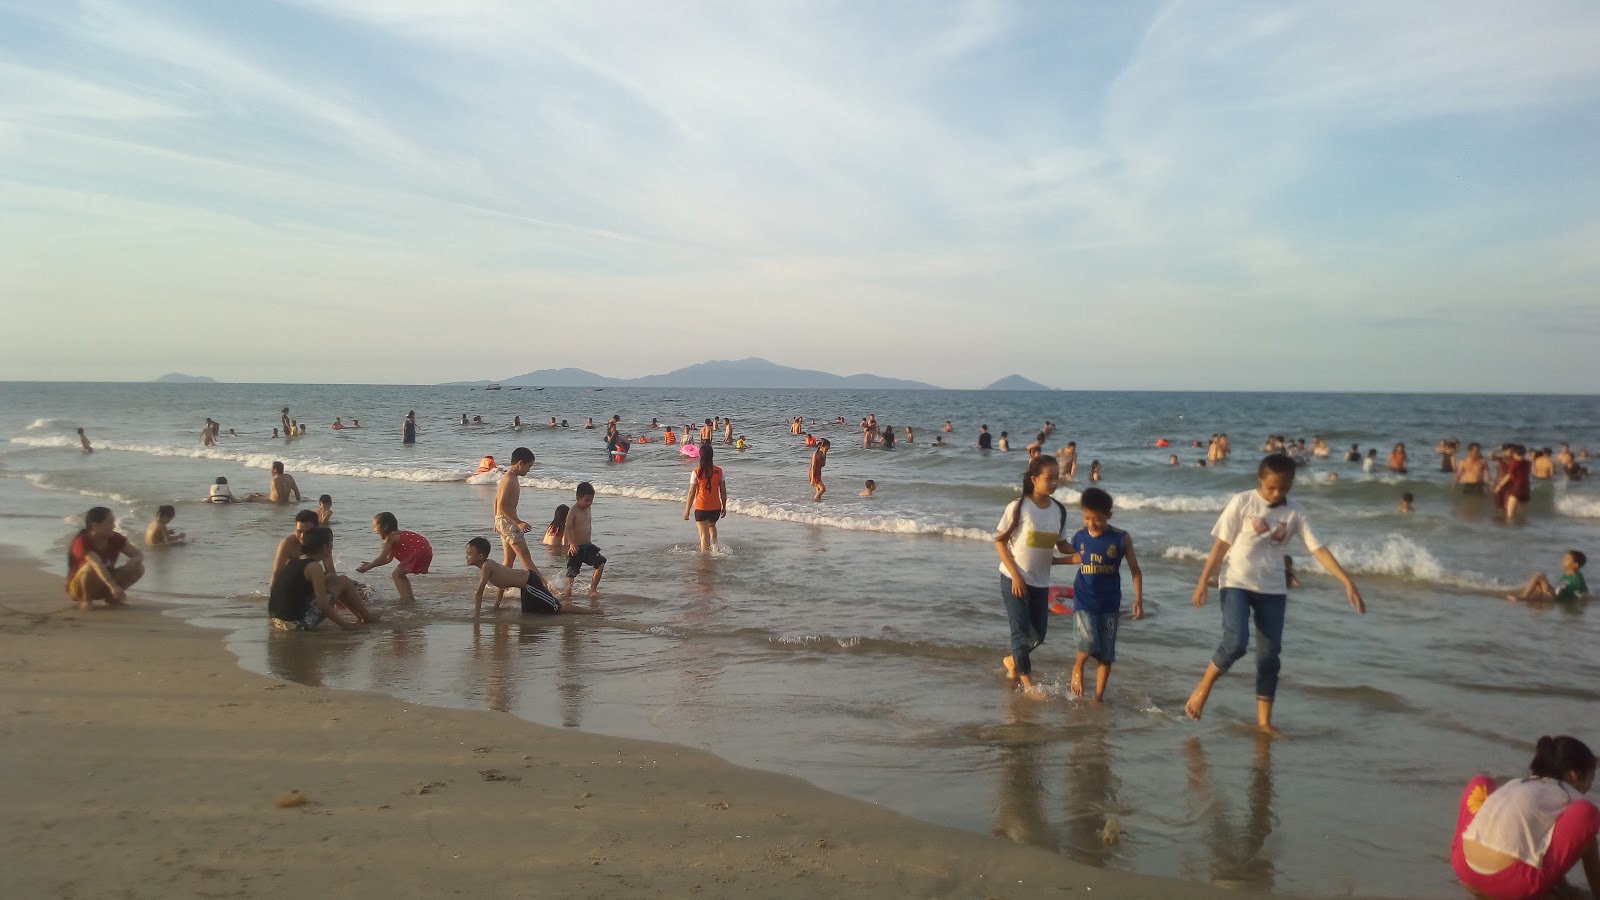 Foto af Binh Minh Beach - populært sted blandt afslapningskendere